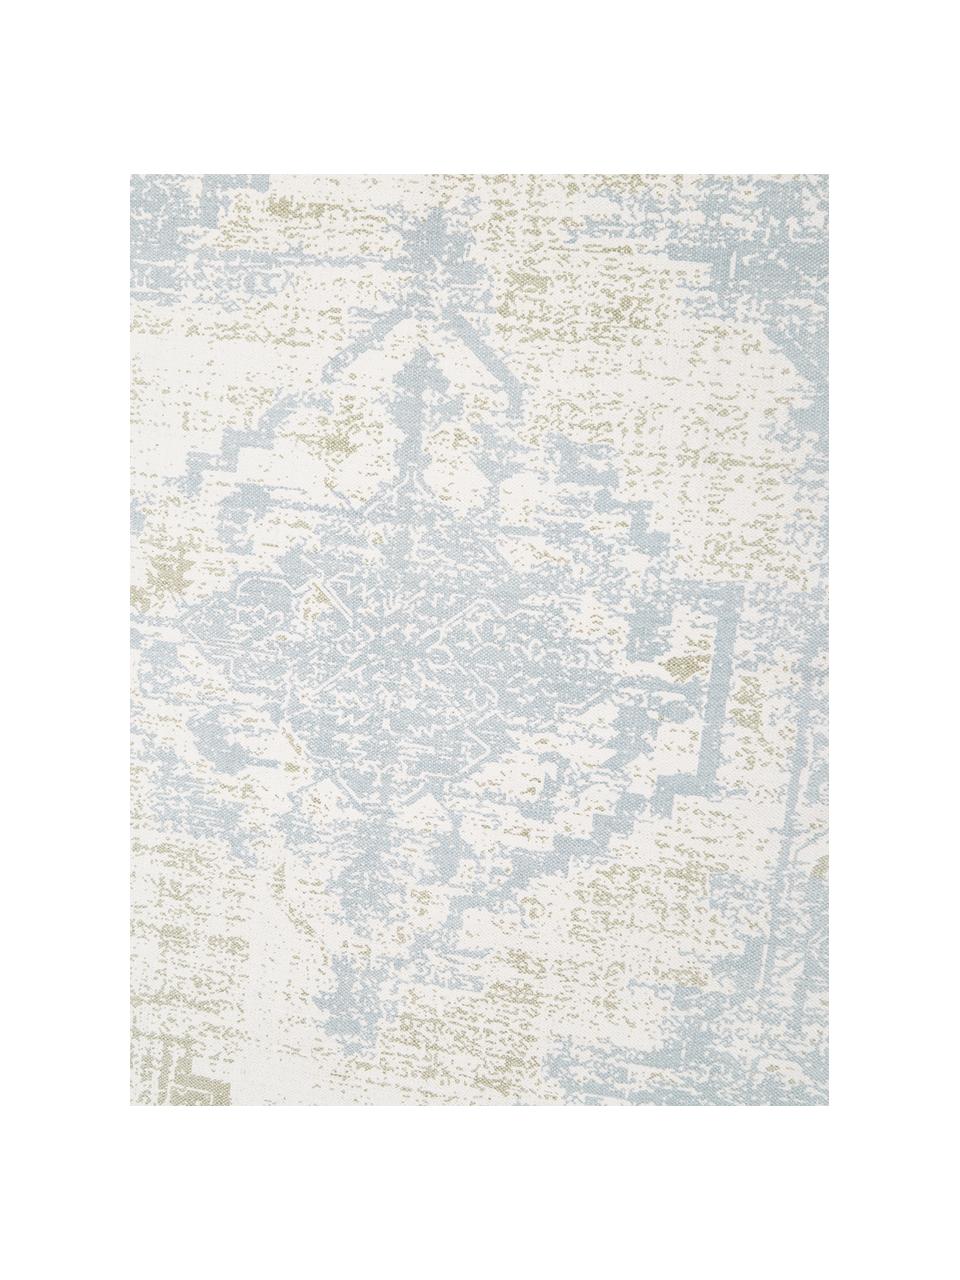 Handgeweven katoenen loper Jasmine in beige/blauw in vintage stijl, Beige, blauw, B 80 x L 250 cm